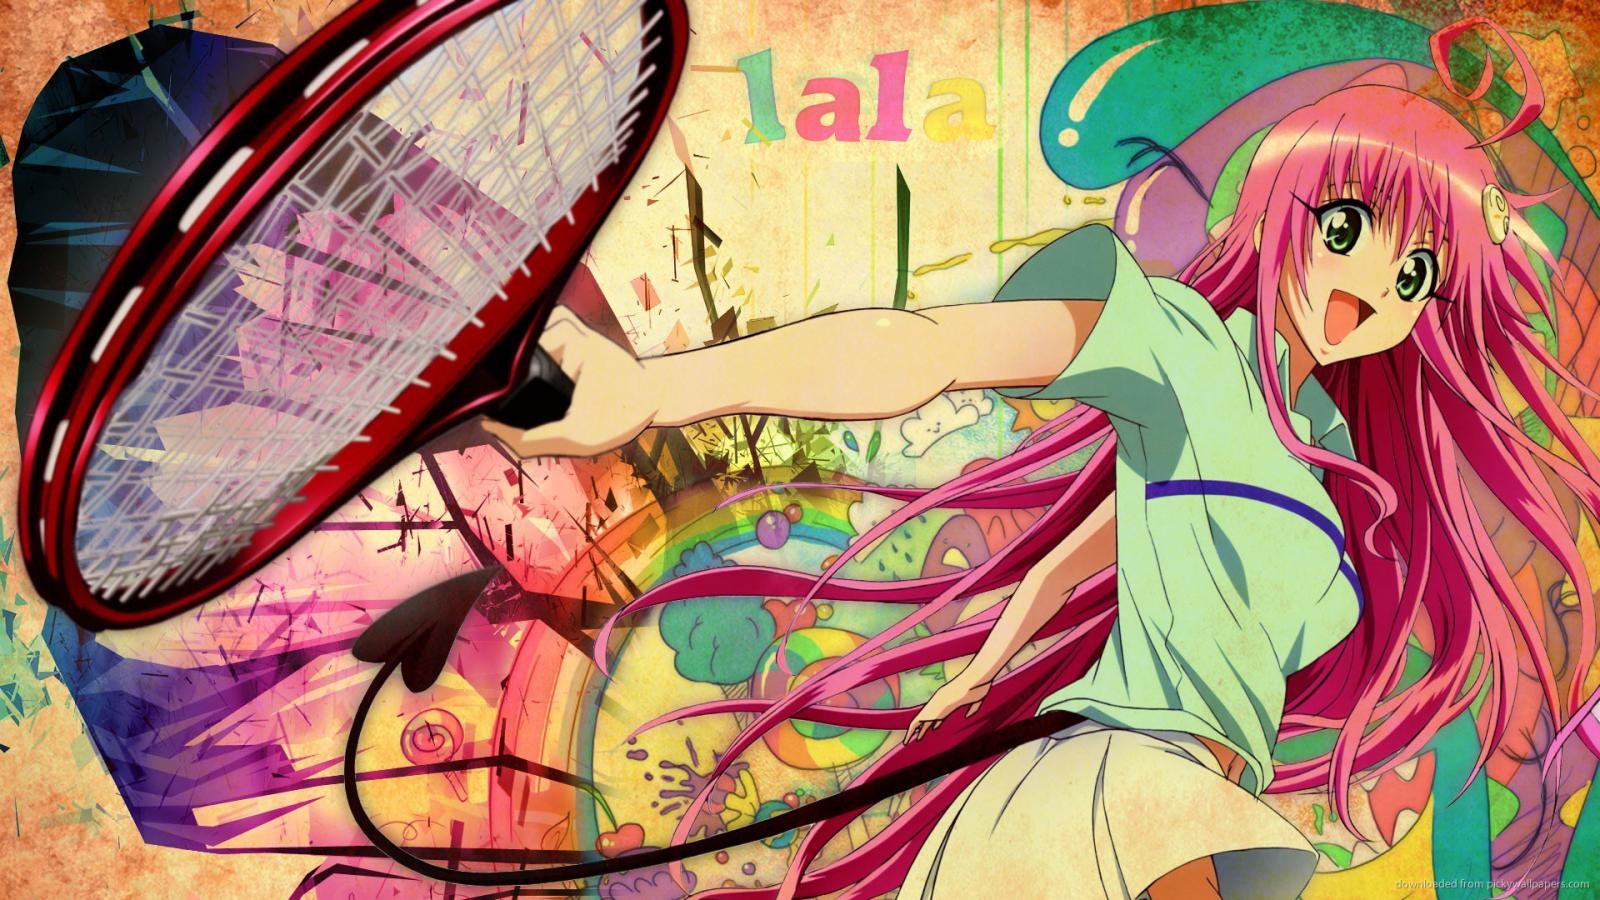 Девушка с теннисной ракеткой